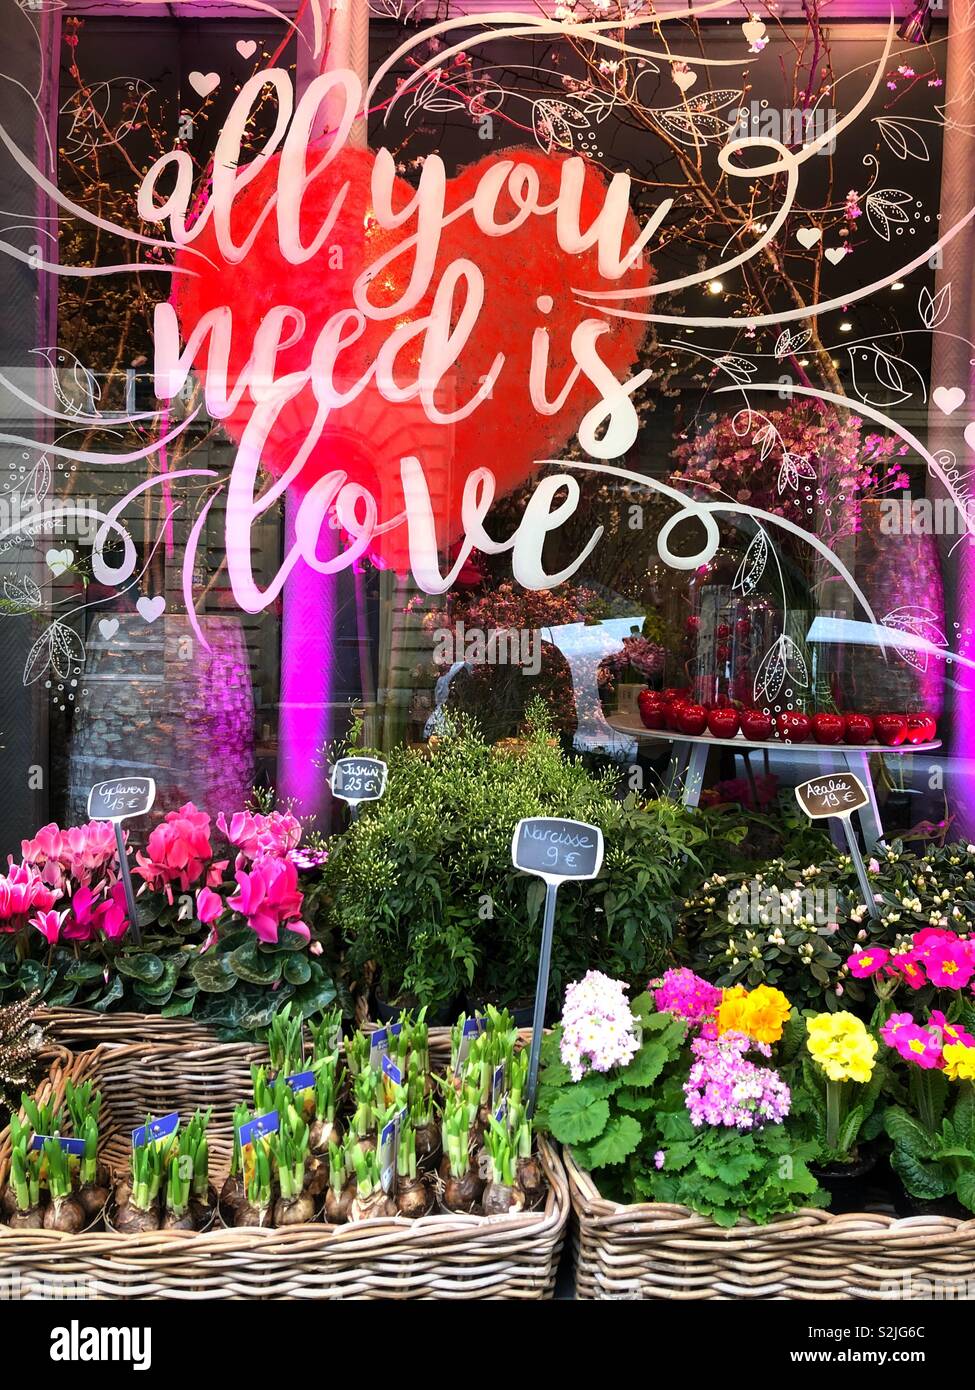 Blumen und Pflanzen für den Verkauf außerhalb von einem Blumenladen in Paris, Frankreich. Das Fenster wird gemalt, mit den Worten: "Alles, was Sie brauchen, ist Liebe" Stockfoto